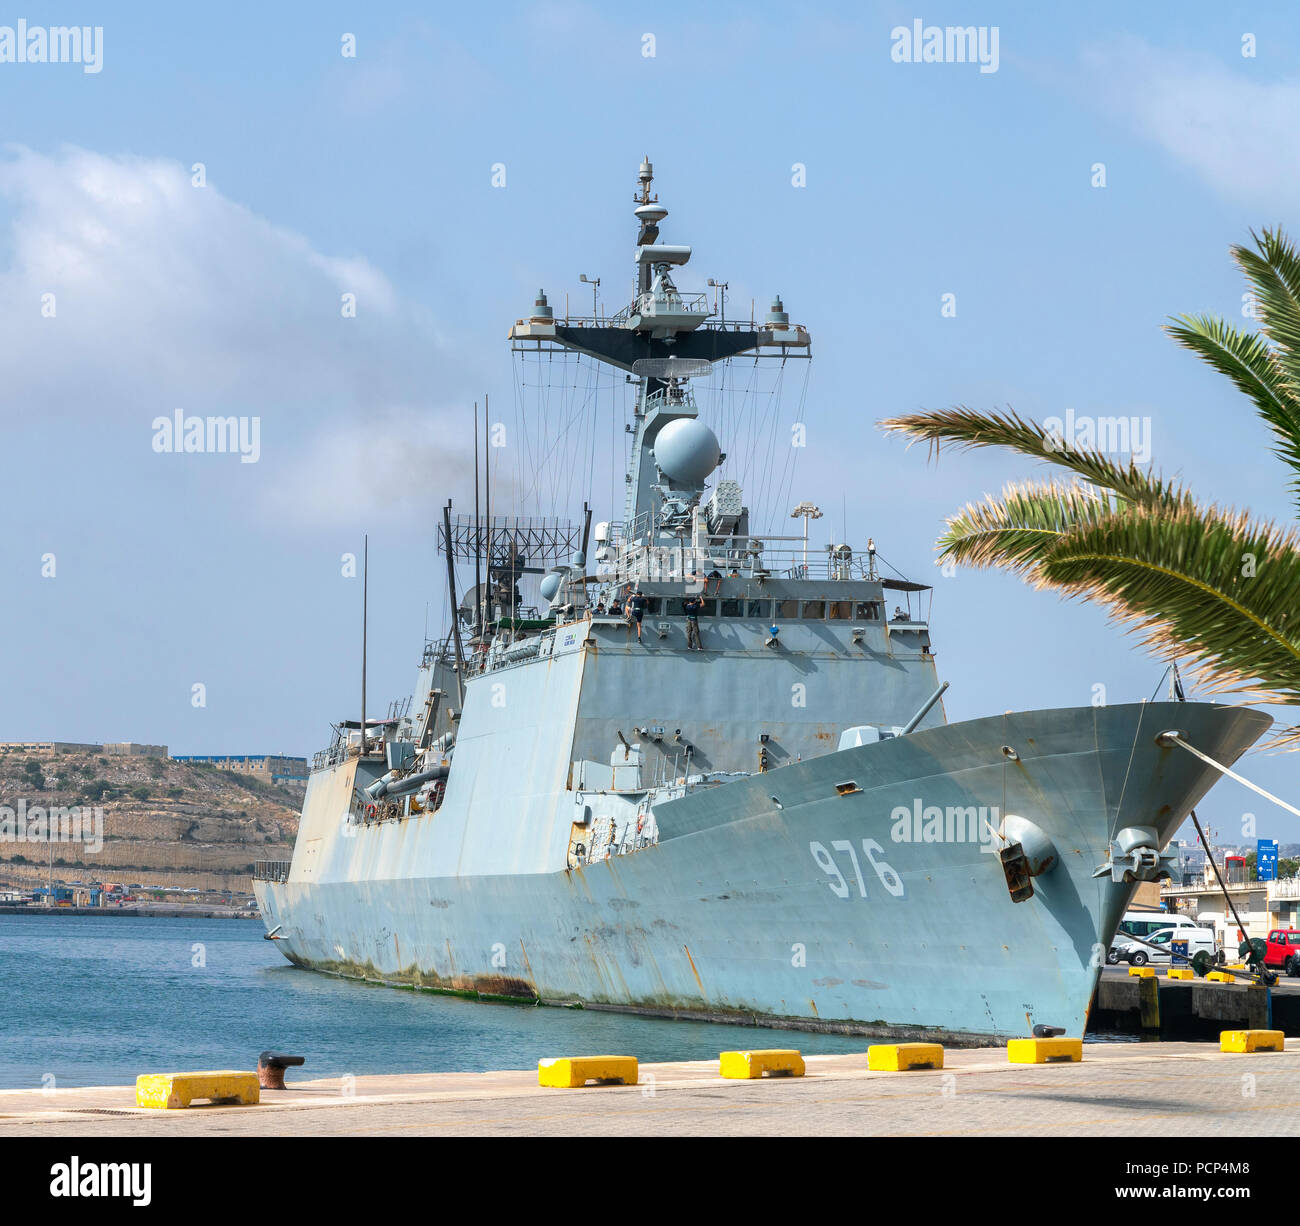 15 juillet 2018 - La Valette, Malte. République de Corée destroyer naval ship Munmu le Grand (DDH 976) amarré dans le Grand Port. Banque D'Images